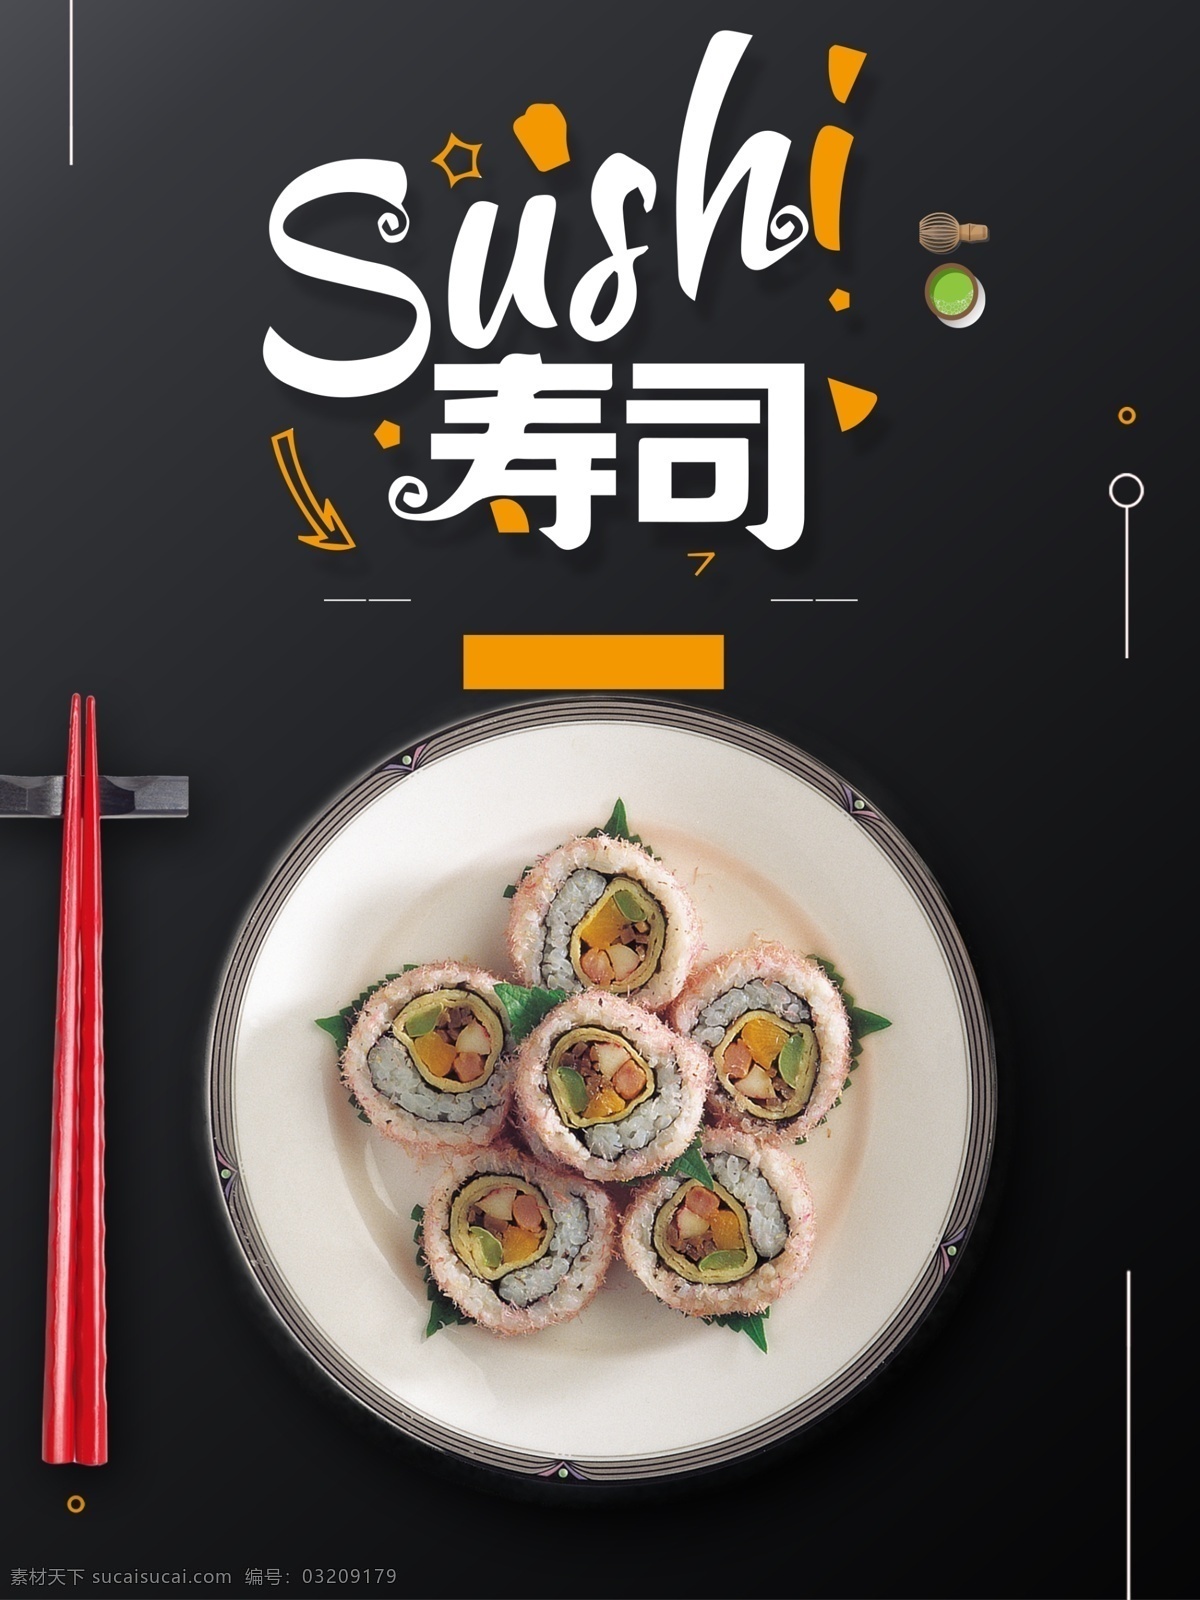 卡通 日式 风味 寿司 背景 食品 美食 旅游 旅行 可爱 手绘 日式风格 樱花 日本 食物 餐厅